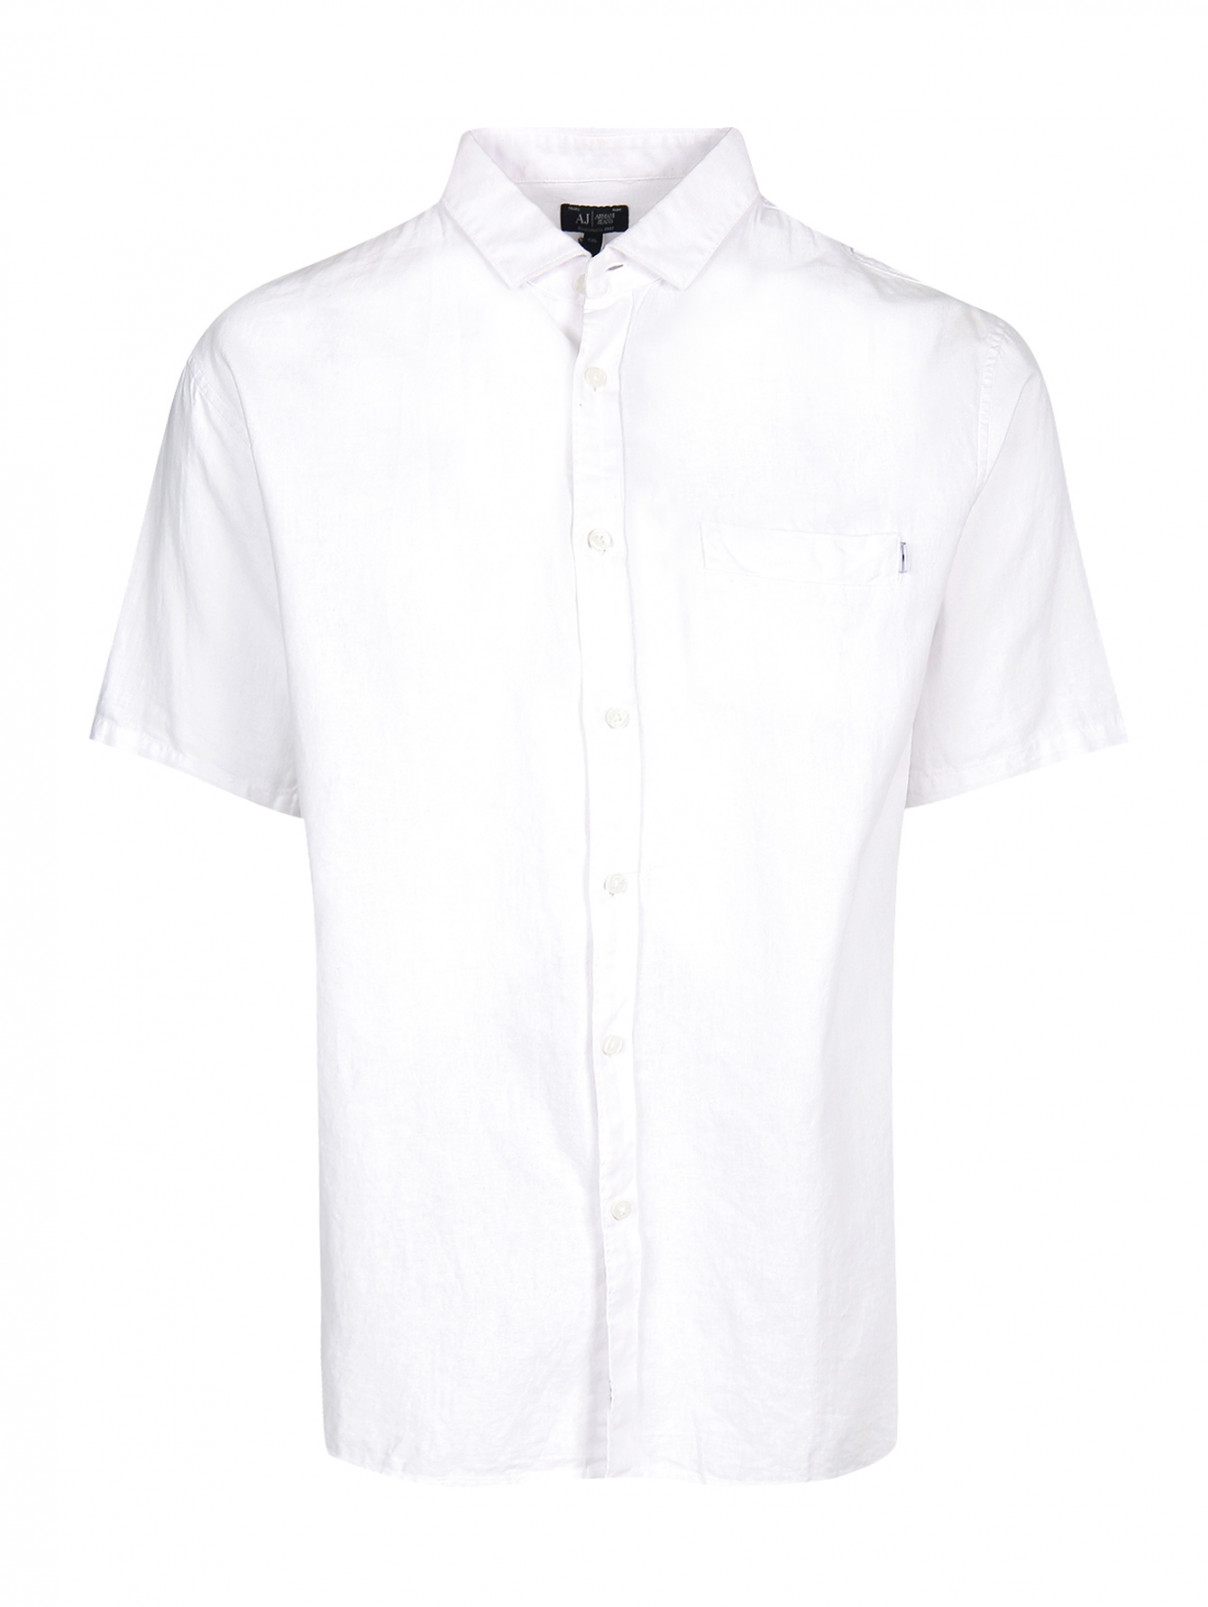 Рубашка из хлопка и льна с коротким рукавом Armani Jeans  –  Общий вид  – Цвет:  Белый